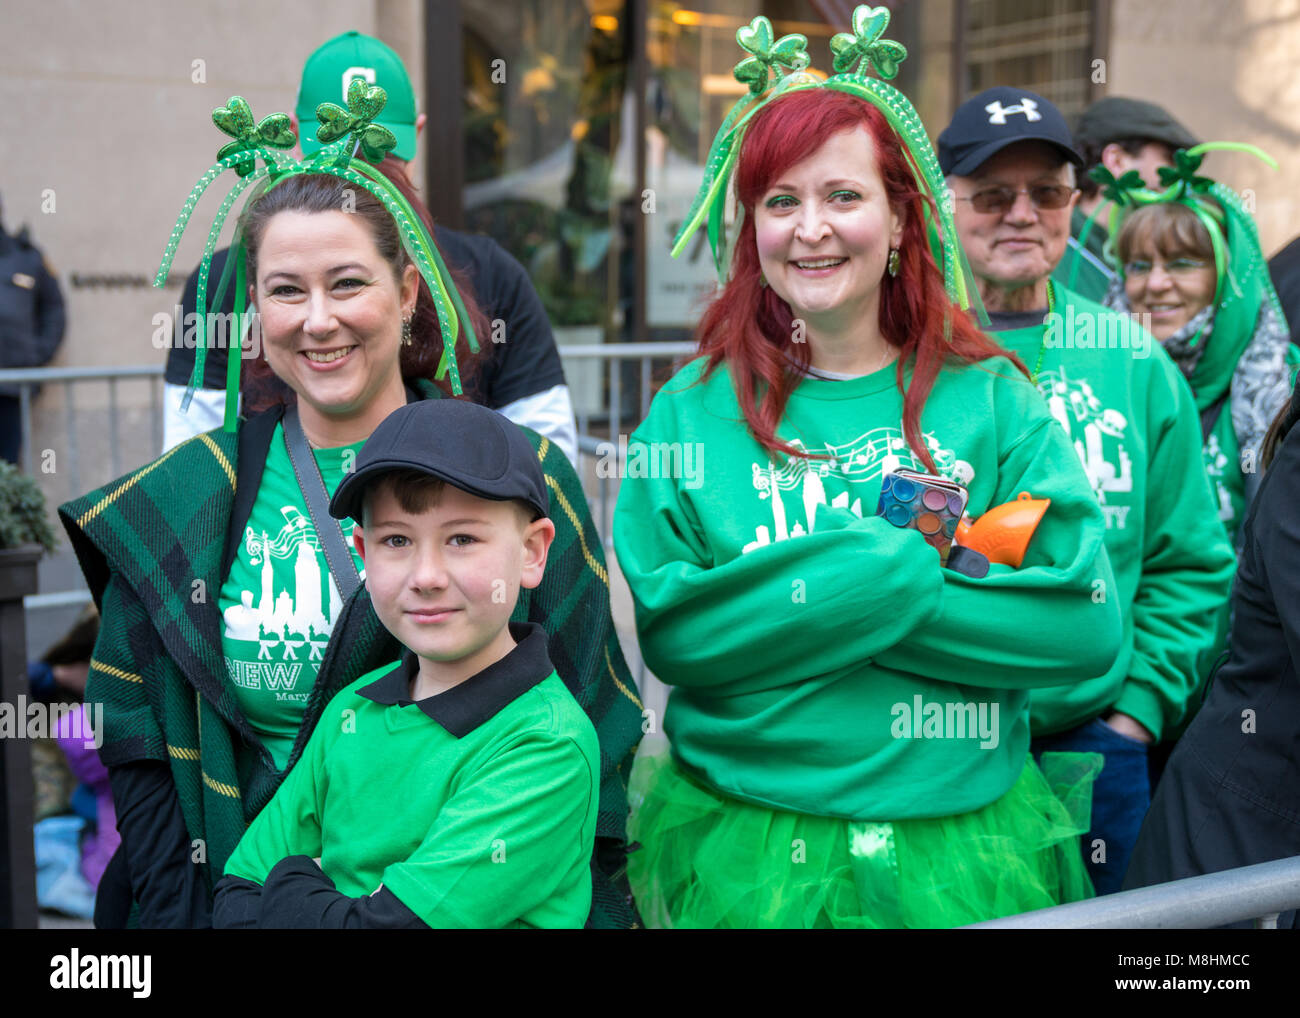 New York, Stati Uniti d'America, 17 Mar 2018. Persone indossano verde come  si guarda la tradizionale festa di San Patrizio Parade di New York della  Quinta Avenue. Foto di Enrique Shore/Alamy Live